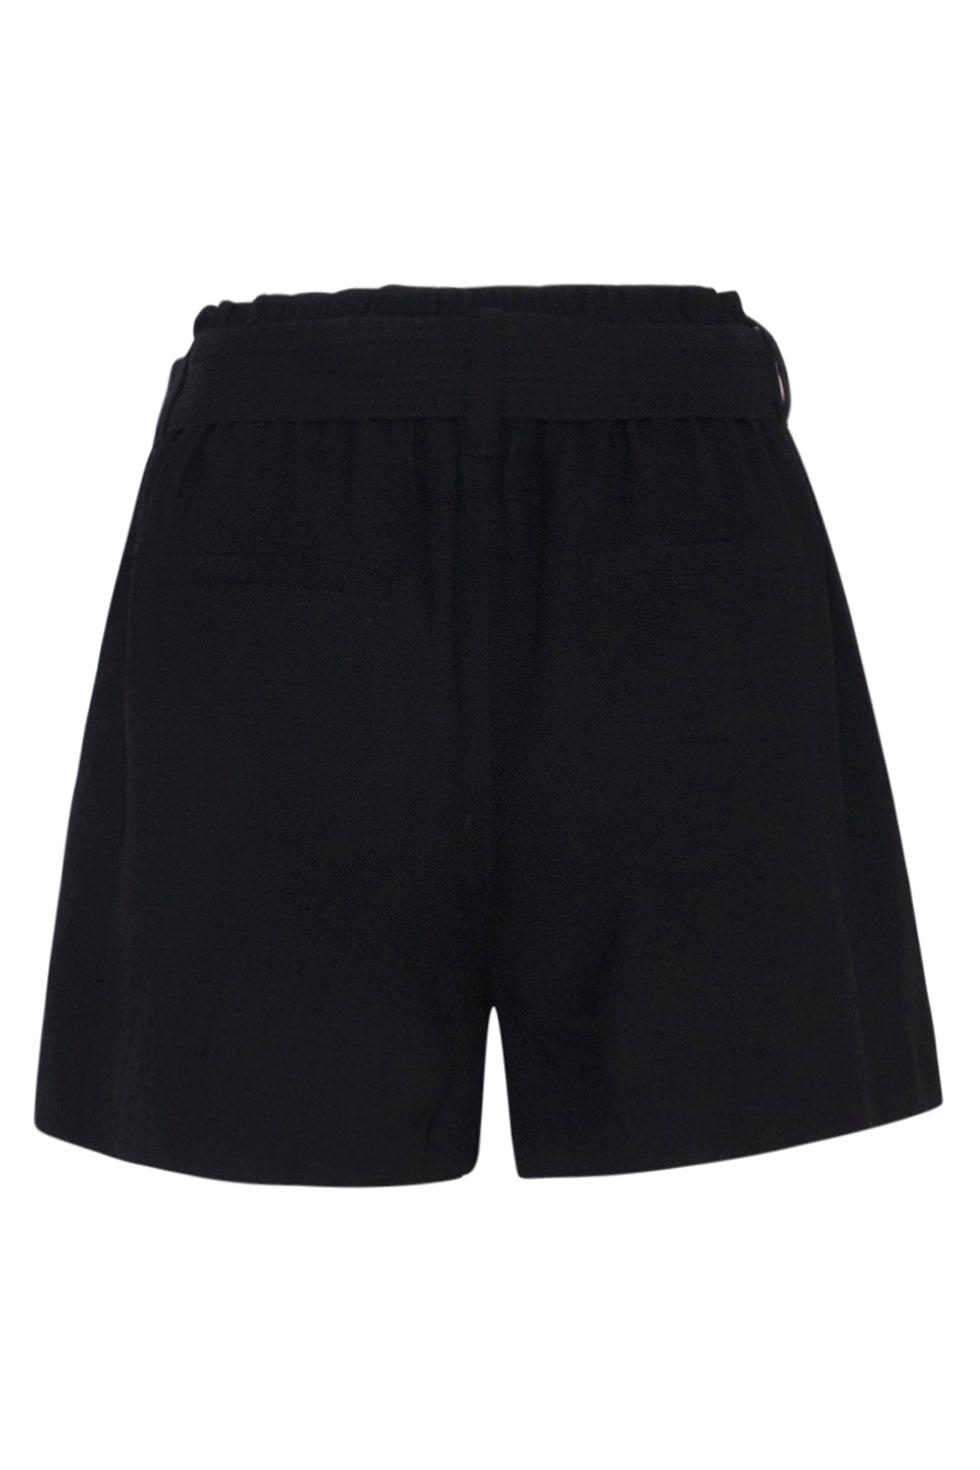 23083-999 Stijlvolle Zwarte Casual Shorts Voor Een Comfortabele Zomerlook